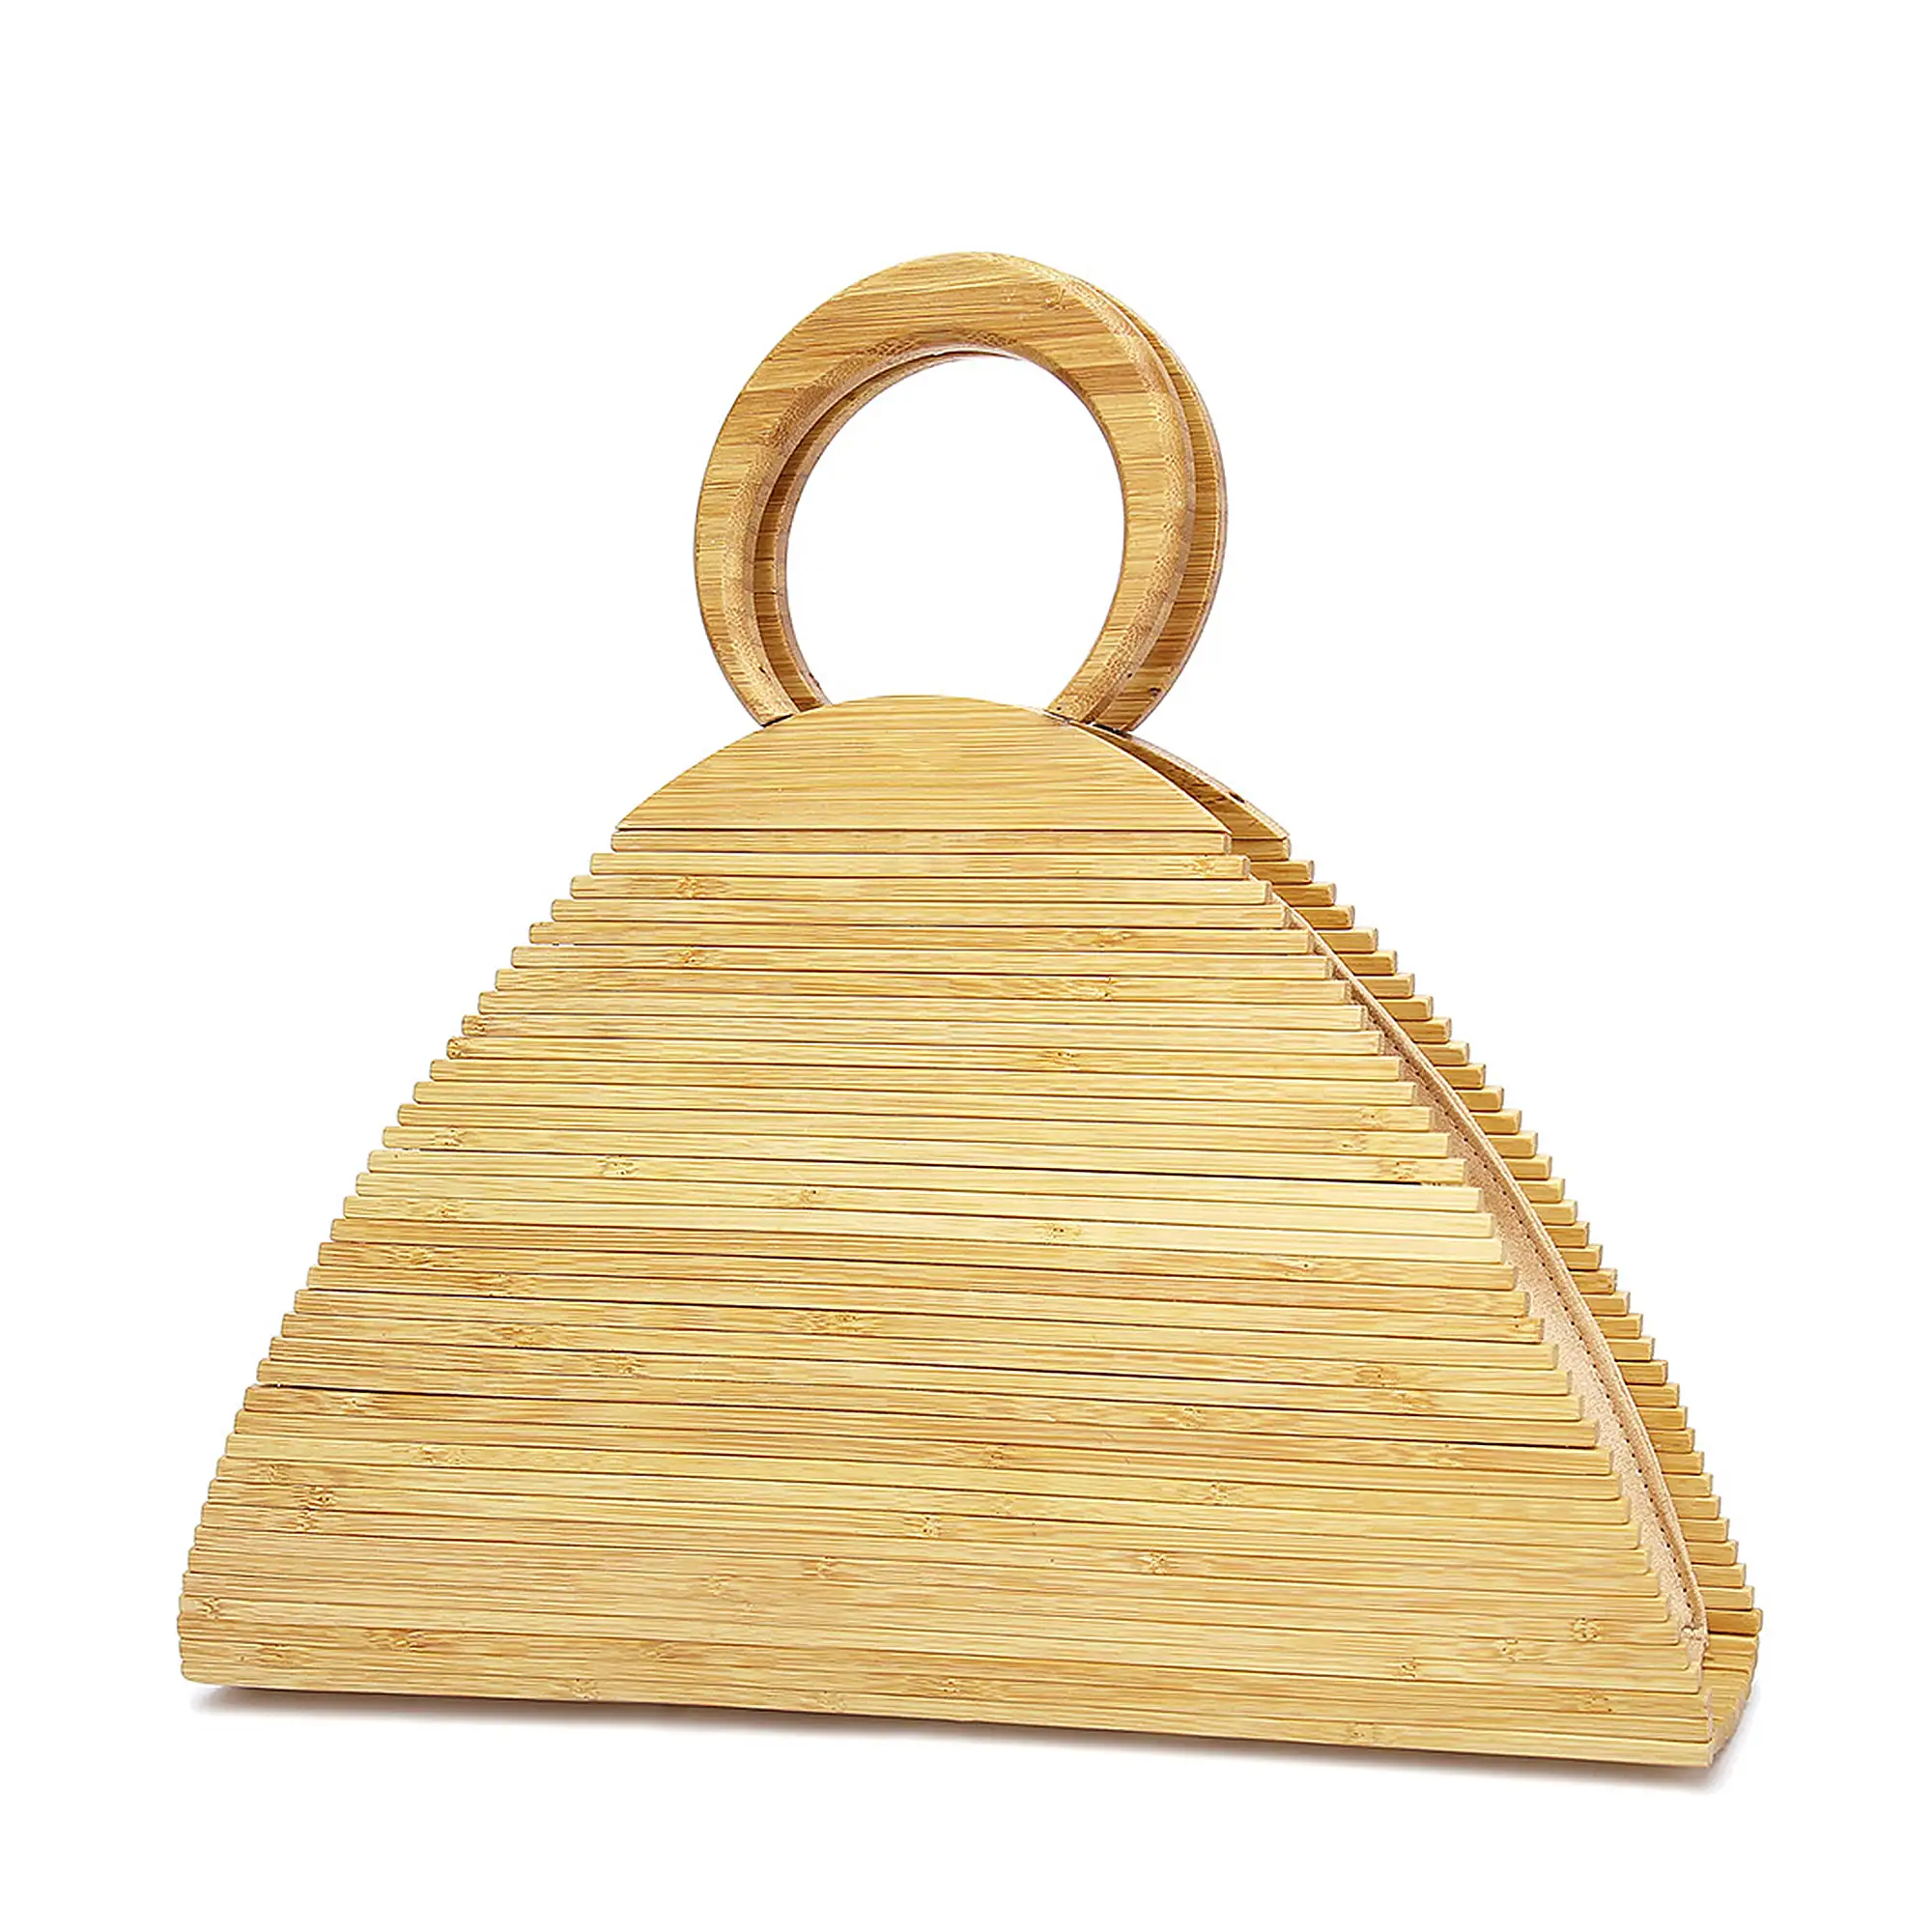 Zone bolso de mano en madera de bambú.